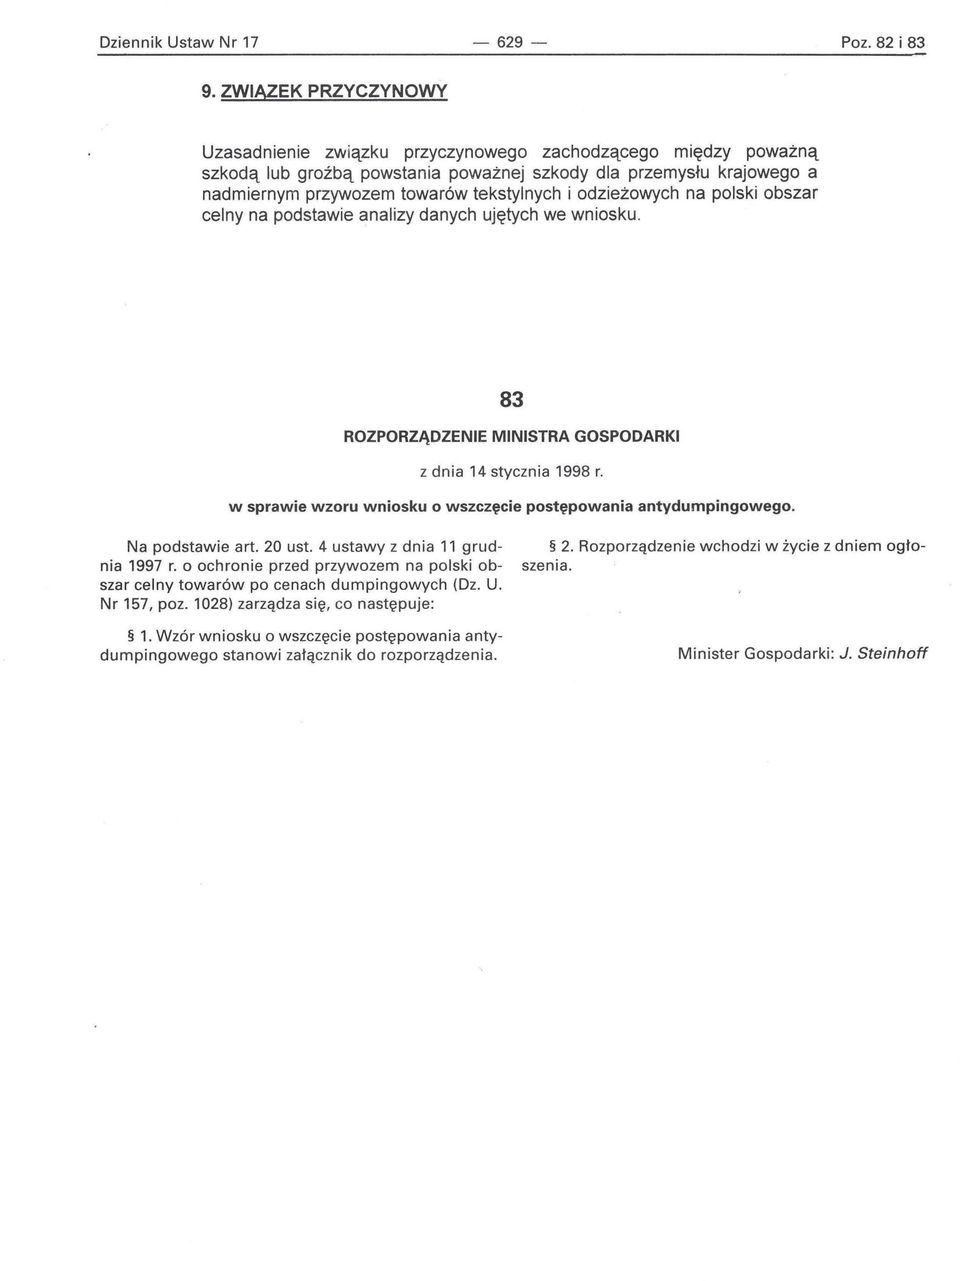 odzieżowych na polski obszar celny na podstawie analizy danych ujętych we wniosku. 83 ROZPORZĄDZENIE MINISTRA GOSPODARKI z dnia 14 stycznia 1998 r.